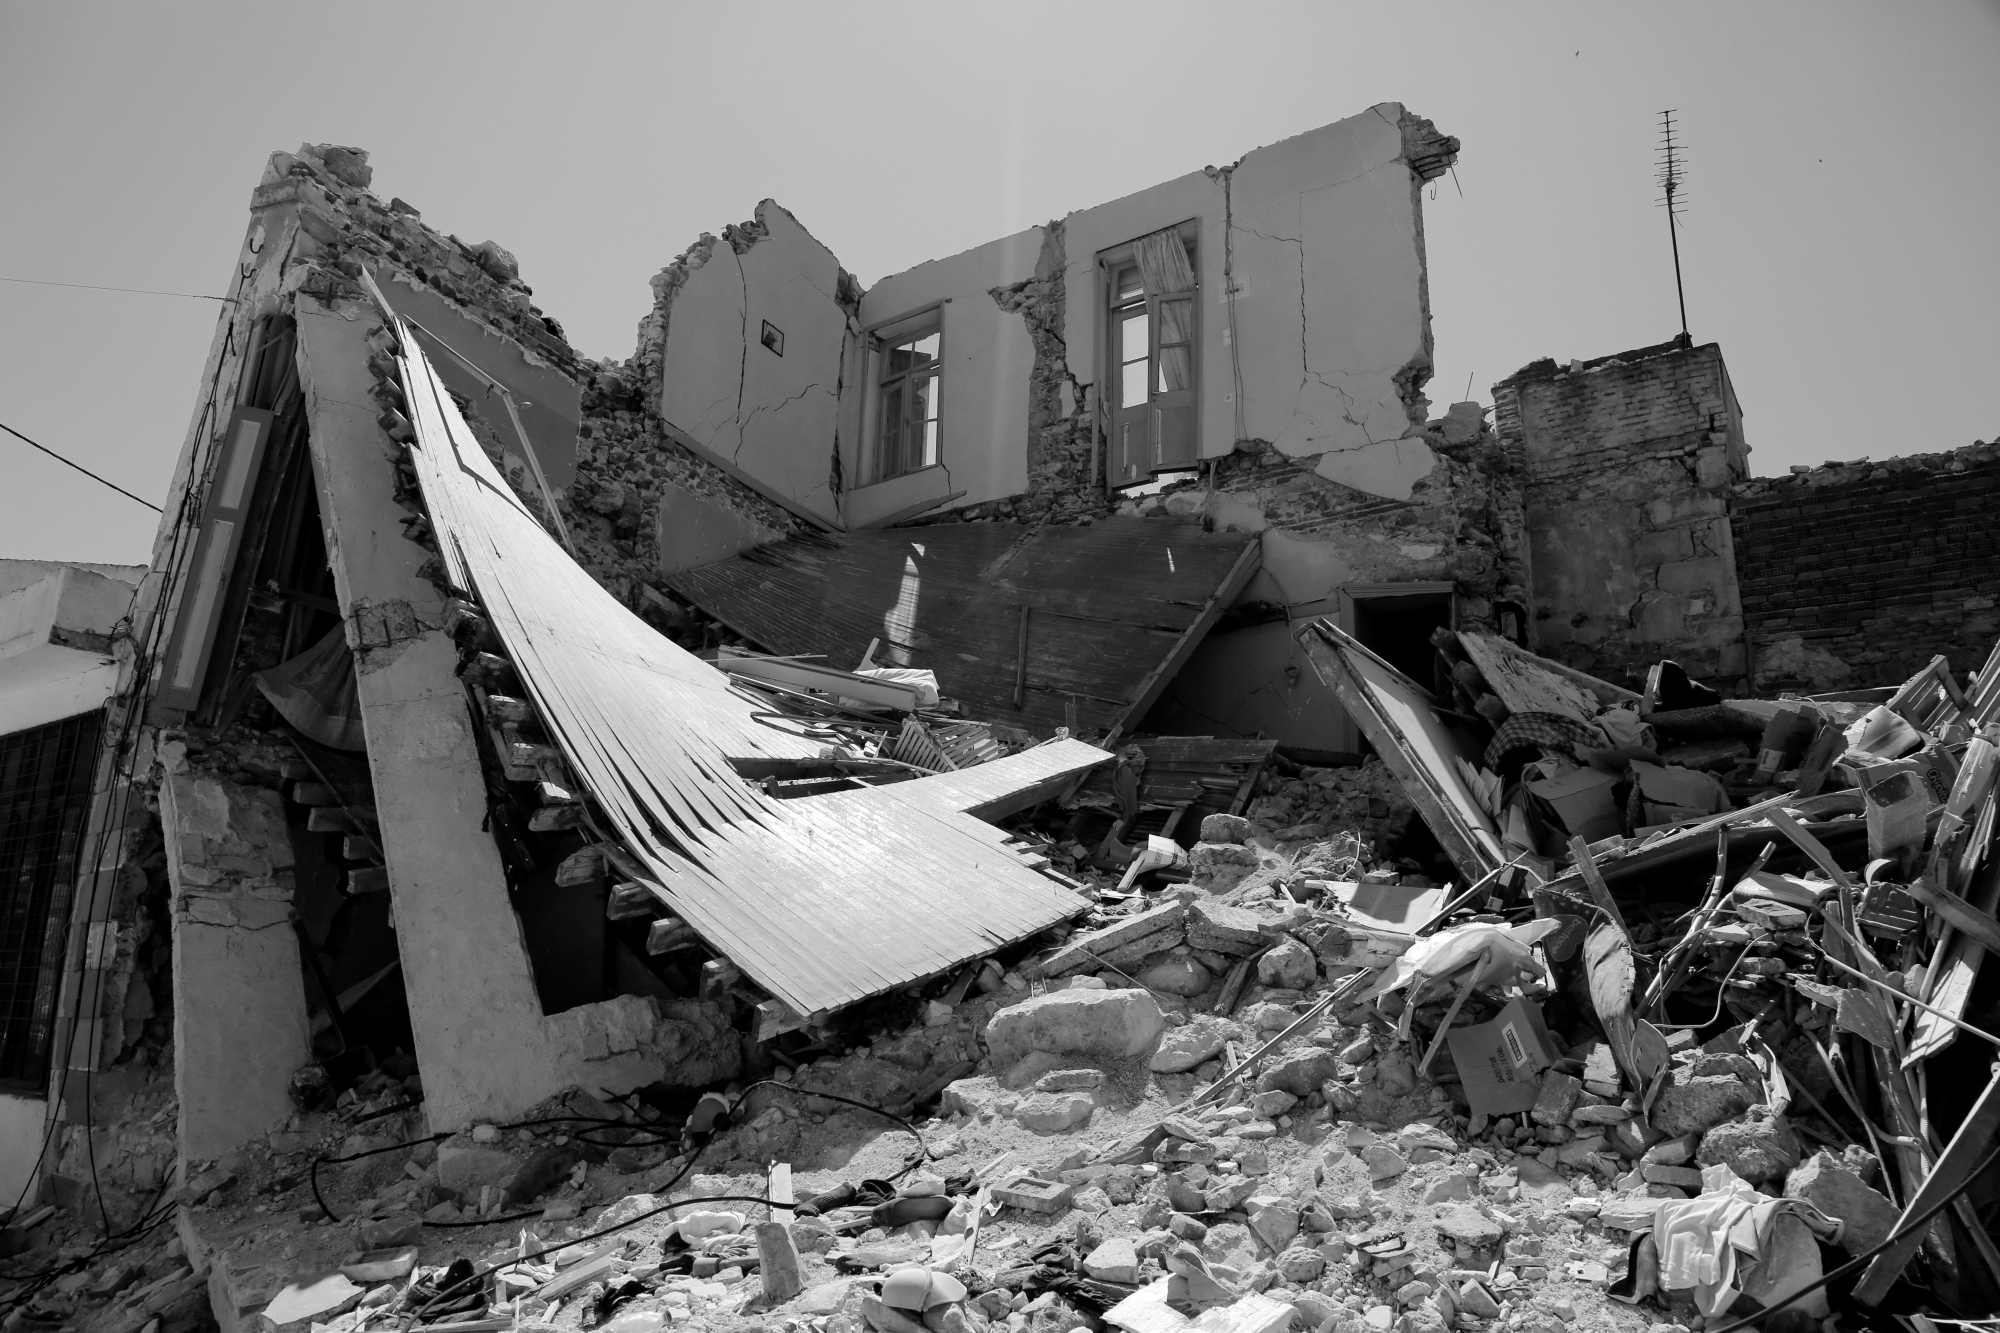 Ρήγμα της Αταλάντης: Οι καταστροφικοί σεισμοί του 1894 - Άταφα πτώματα, λιποθυμίες στην Ερμού και ζημιές στην Πύλη του Αδριανού